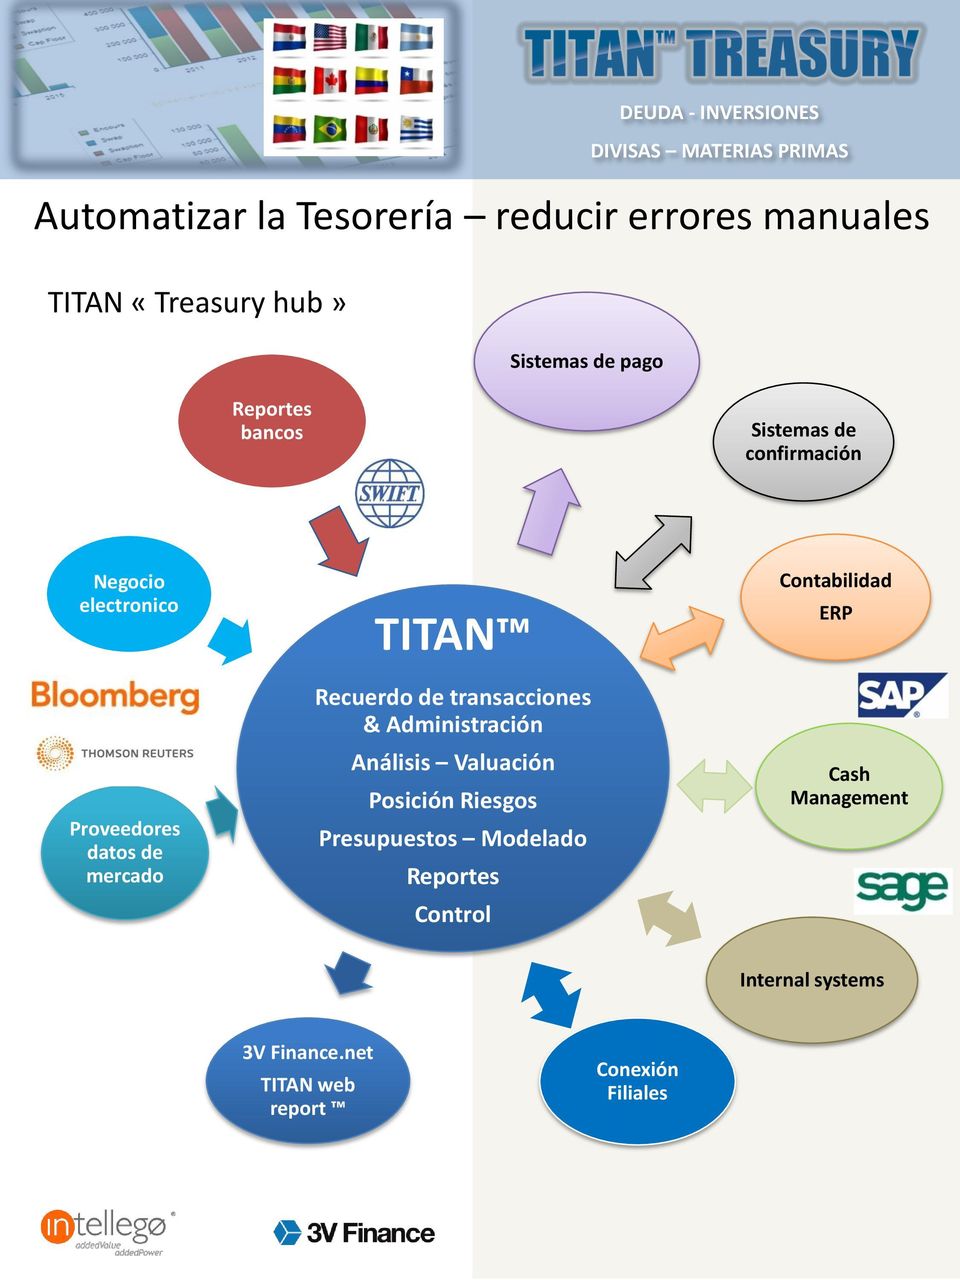 TITAN Recuerdo de transacciones & Administración Análisis Valuación Posición Riesgos Presupuestos Modelado